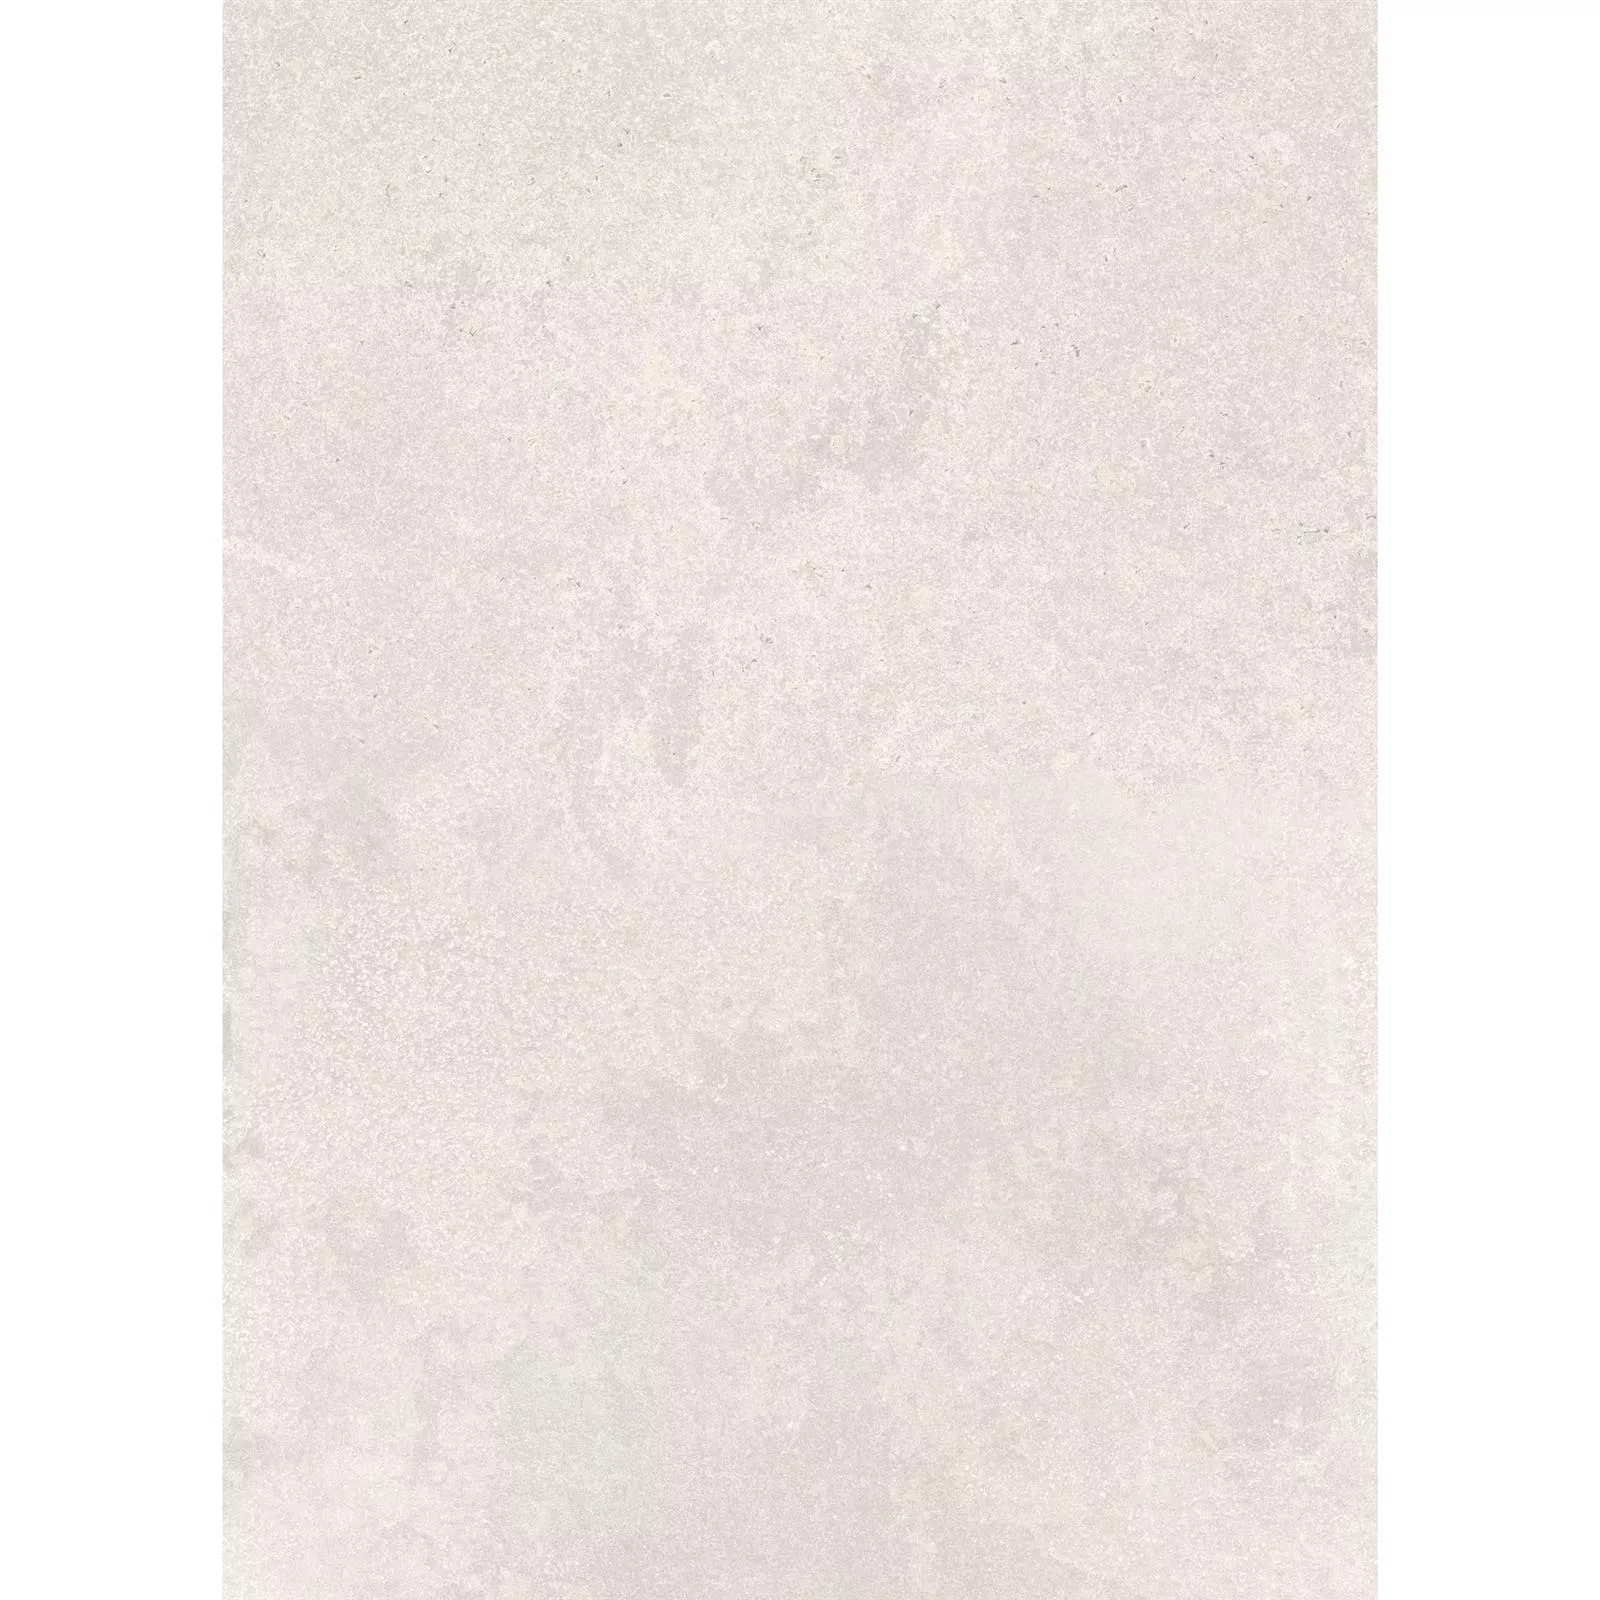 Πλακάκια Δαπέδου Πέτρινη Όψη Horizon Μπεζ 60x120cm